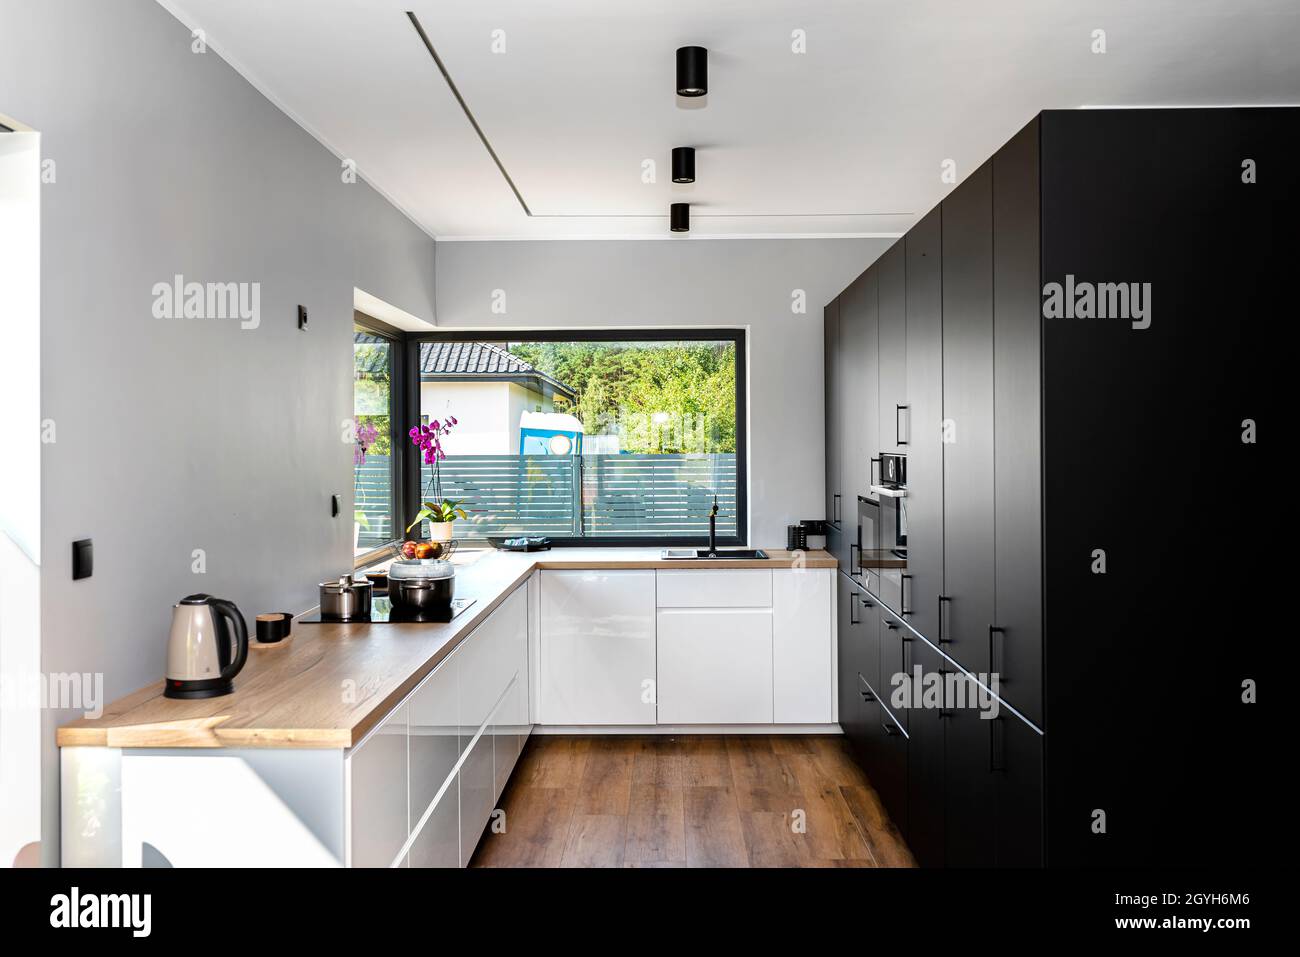 Eine moderne Küche mit weißen und schwarzen Fronten und einem großen  Eckfenster, Vinylplatten auf dem Boden Stockfotografie - Alamy